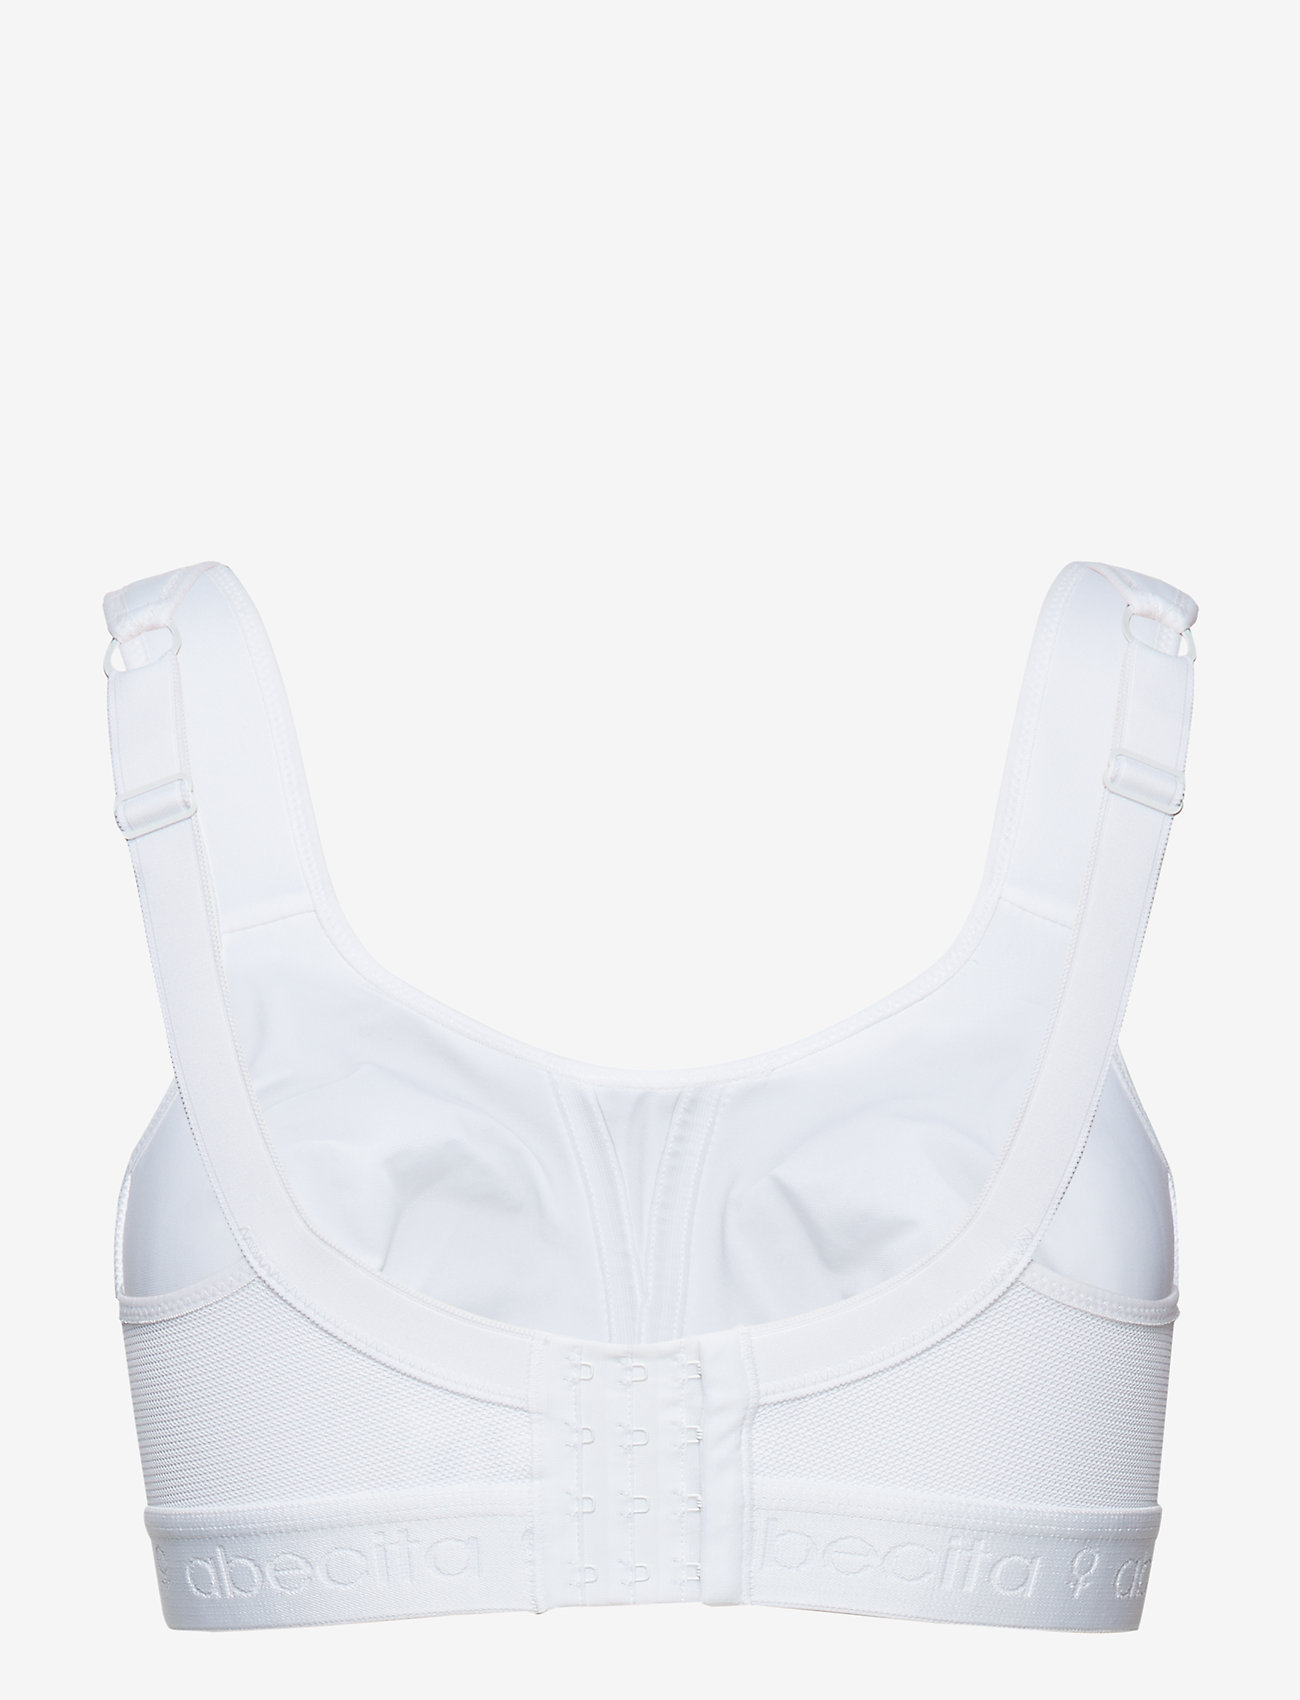 Abecita - Kimberly,Sport bra - sport bras: high support - white - 1